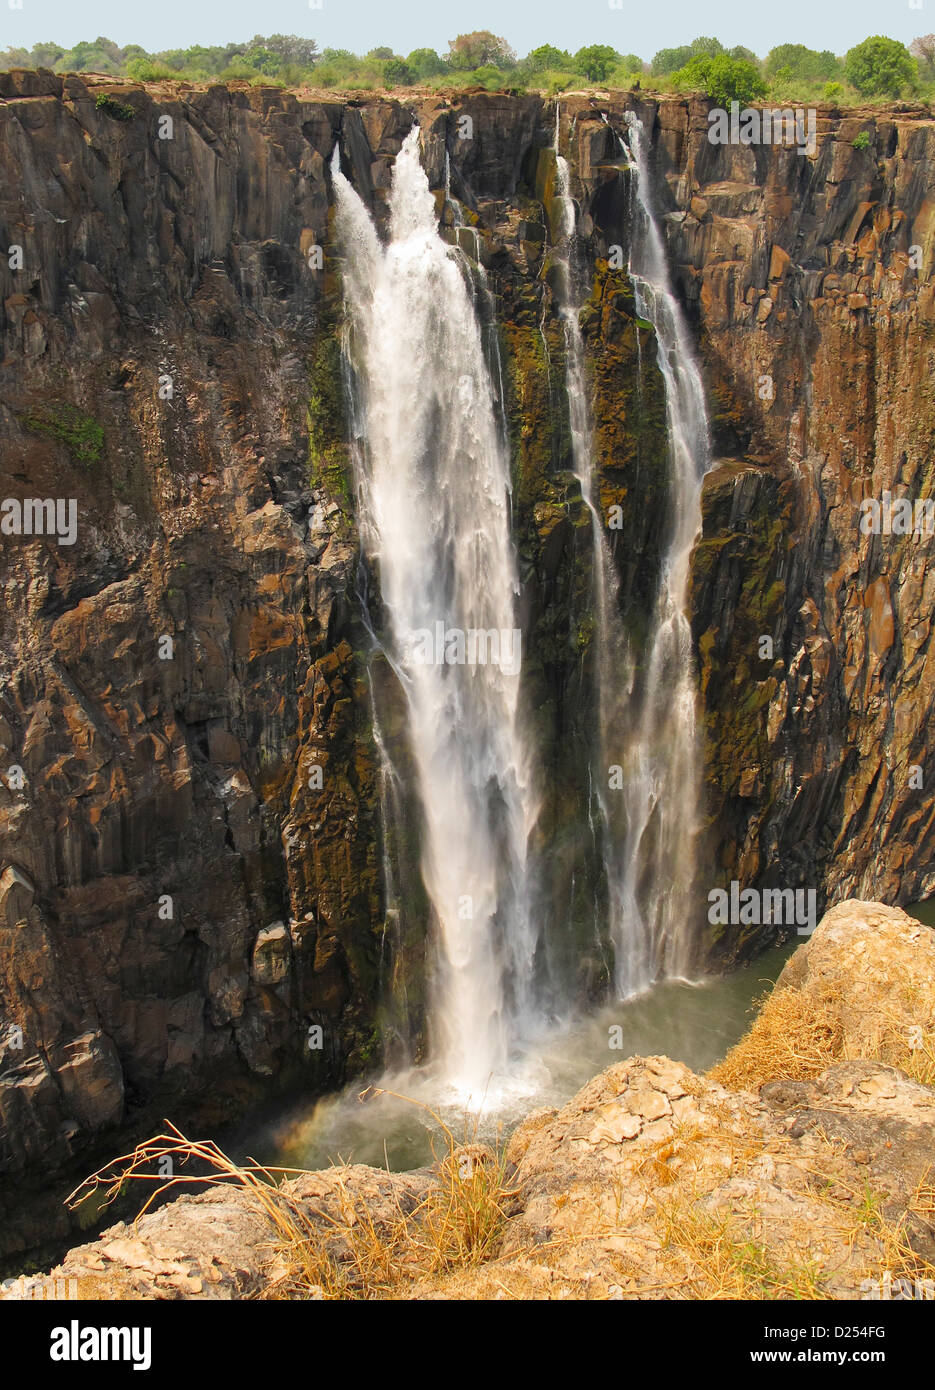 Victoria Falls in dry season, Zambia Stock Photo